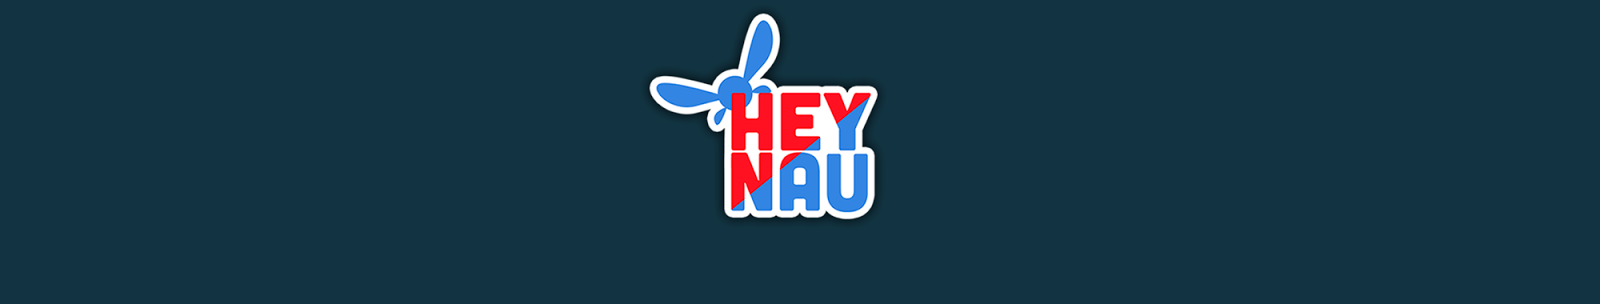 Hey Nau